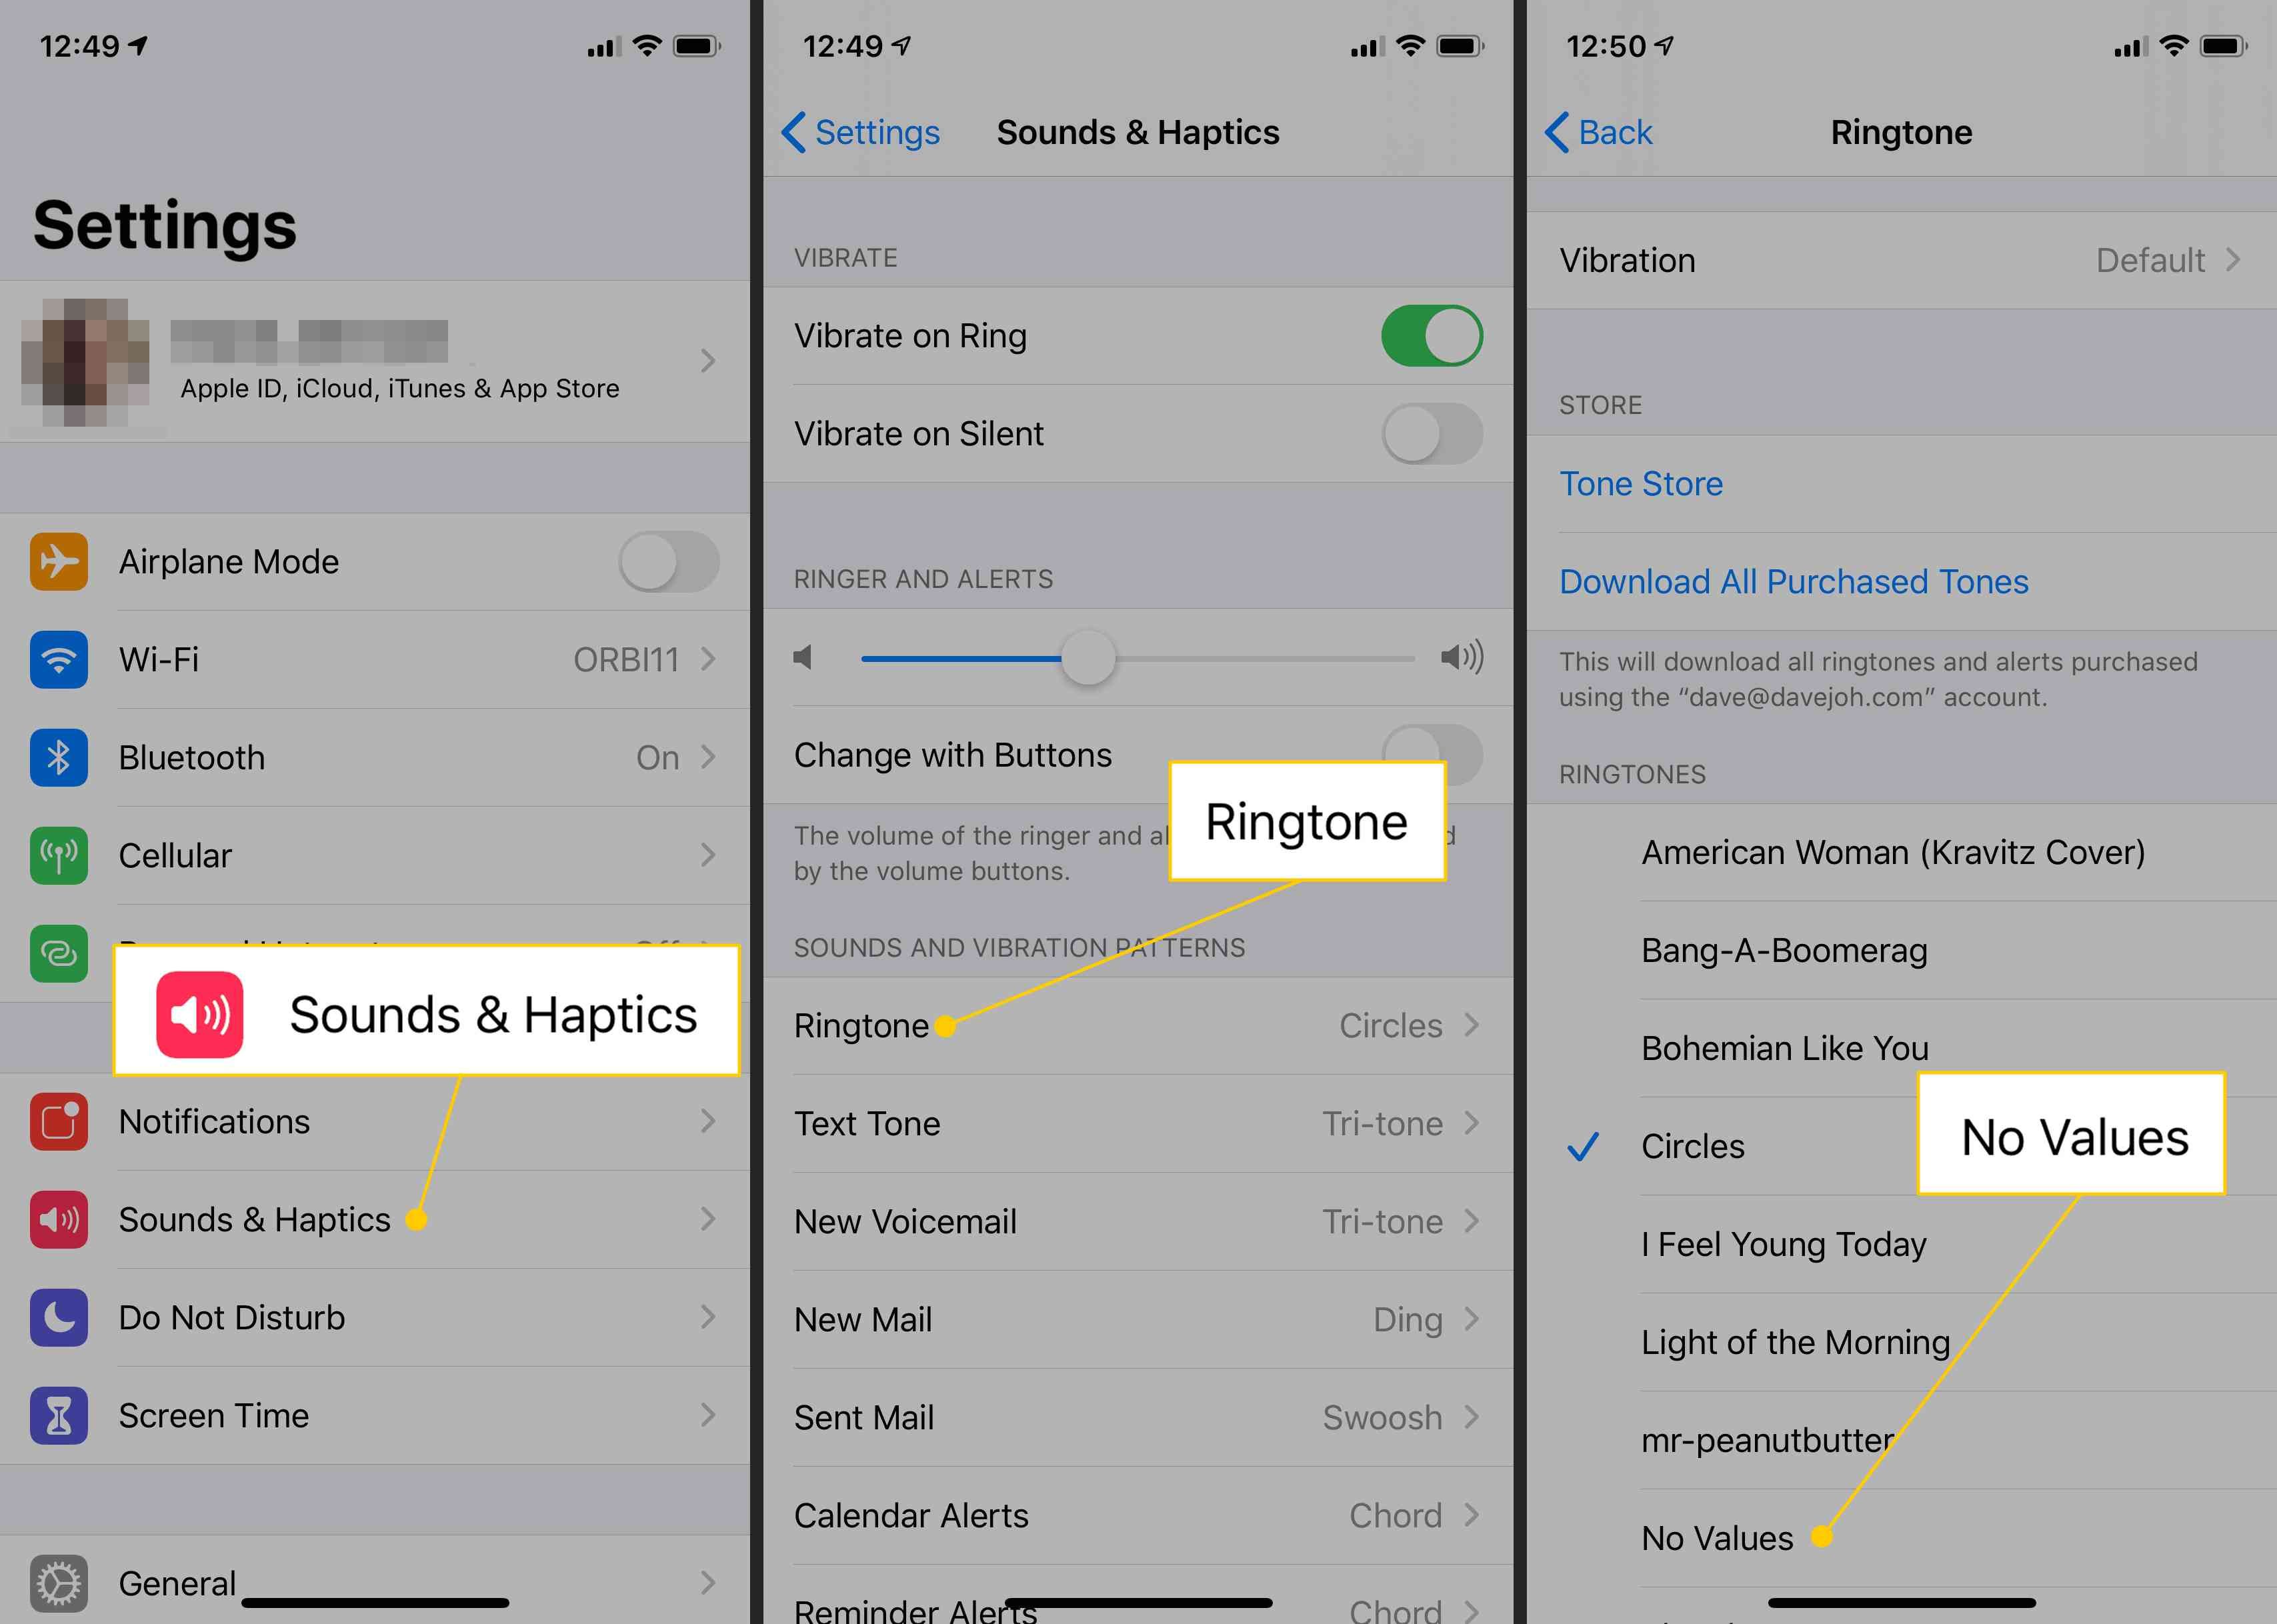 Sound & Haptics, Мелодия звонка, мелодия, созданная вами в настройках iOS